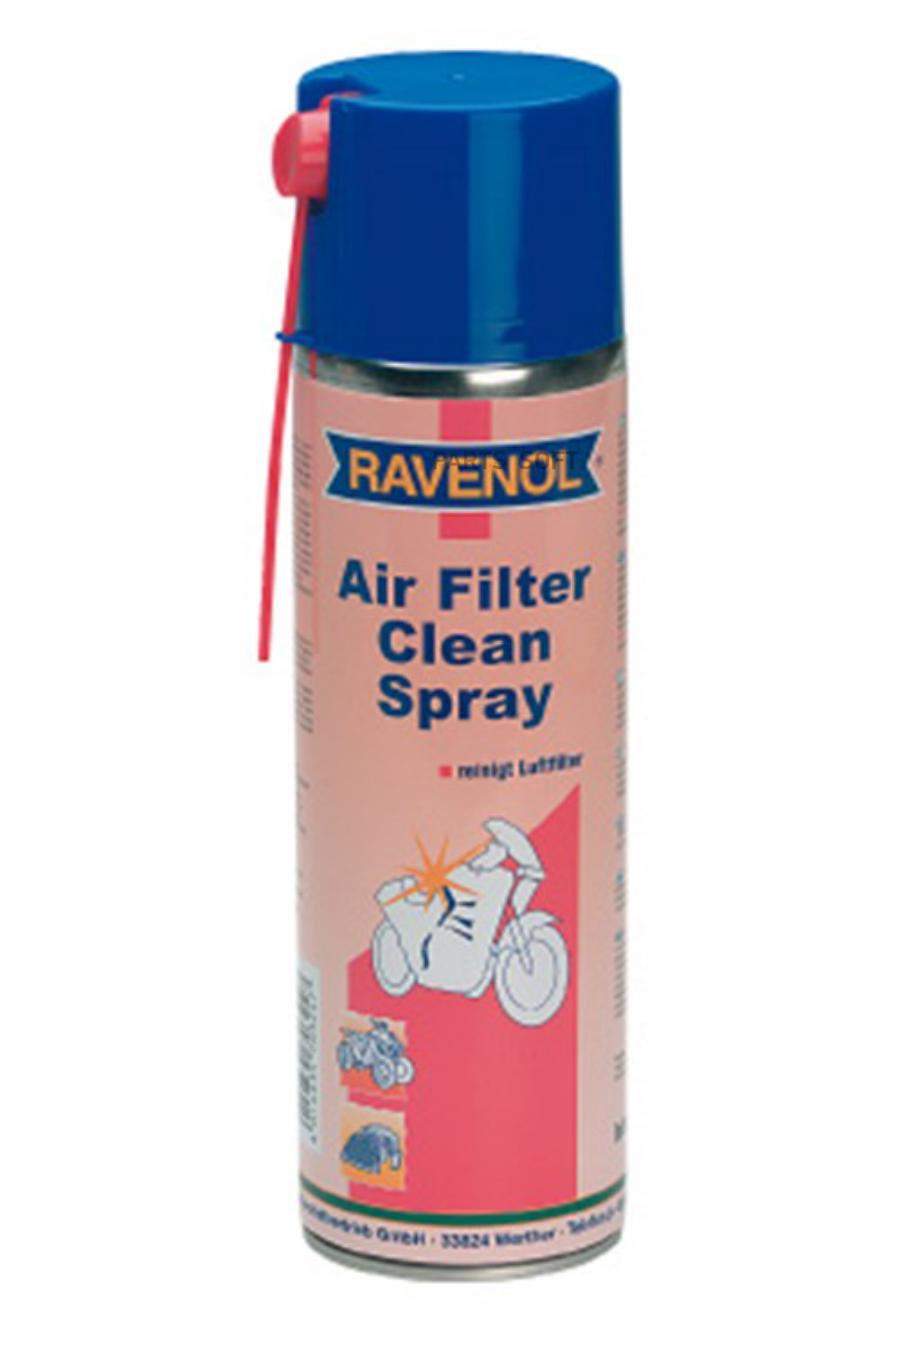 RAVENOL 4014835703247 Очиститель для поролон. фильтров RAVENOL Air Filter